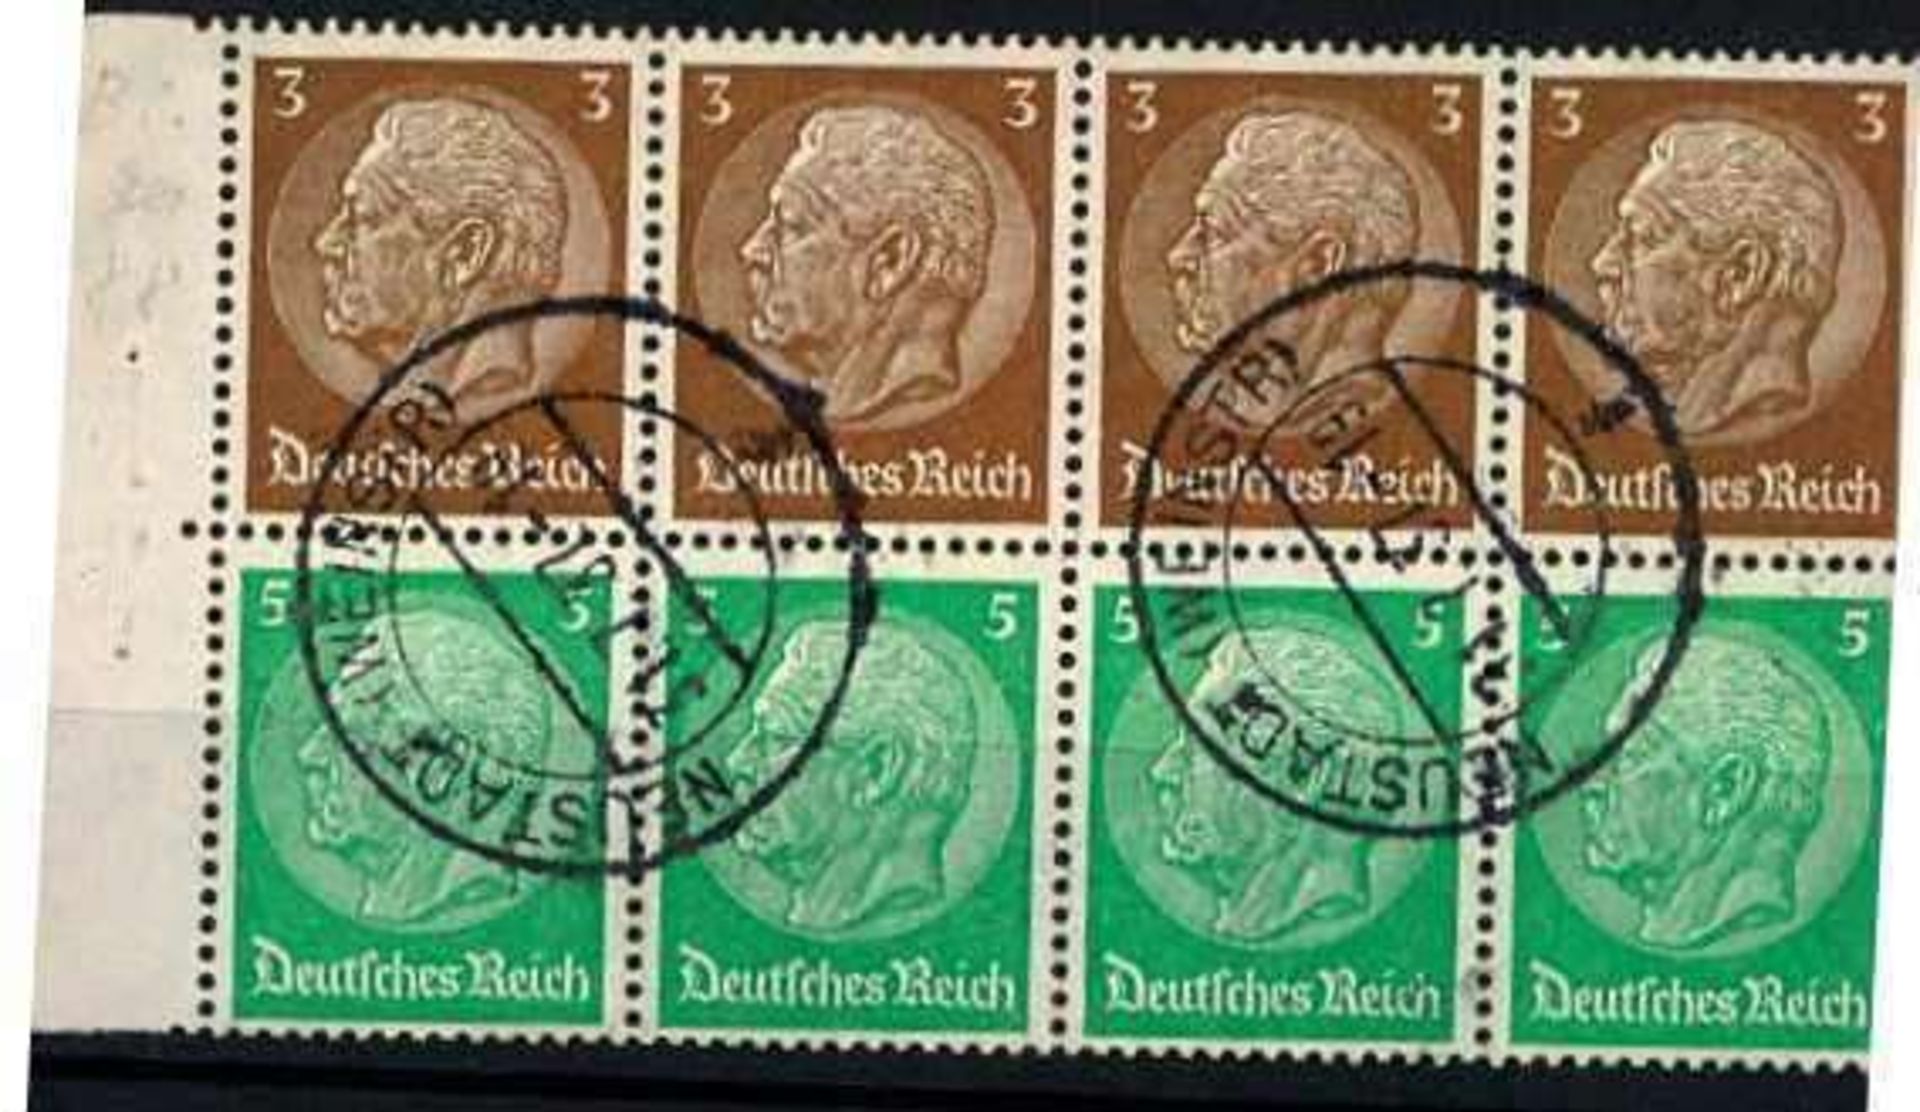 Deutsches Reich 1936, MiNr. H-Block 87, gestempelt German empire in 1936, MiNr. H block 87, stamped